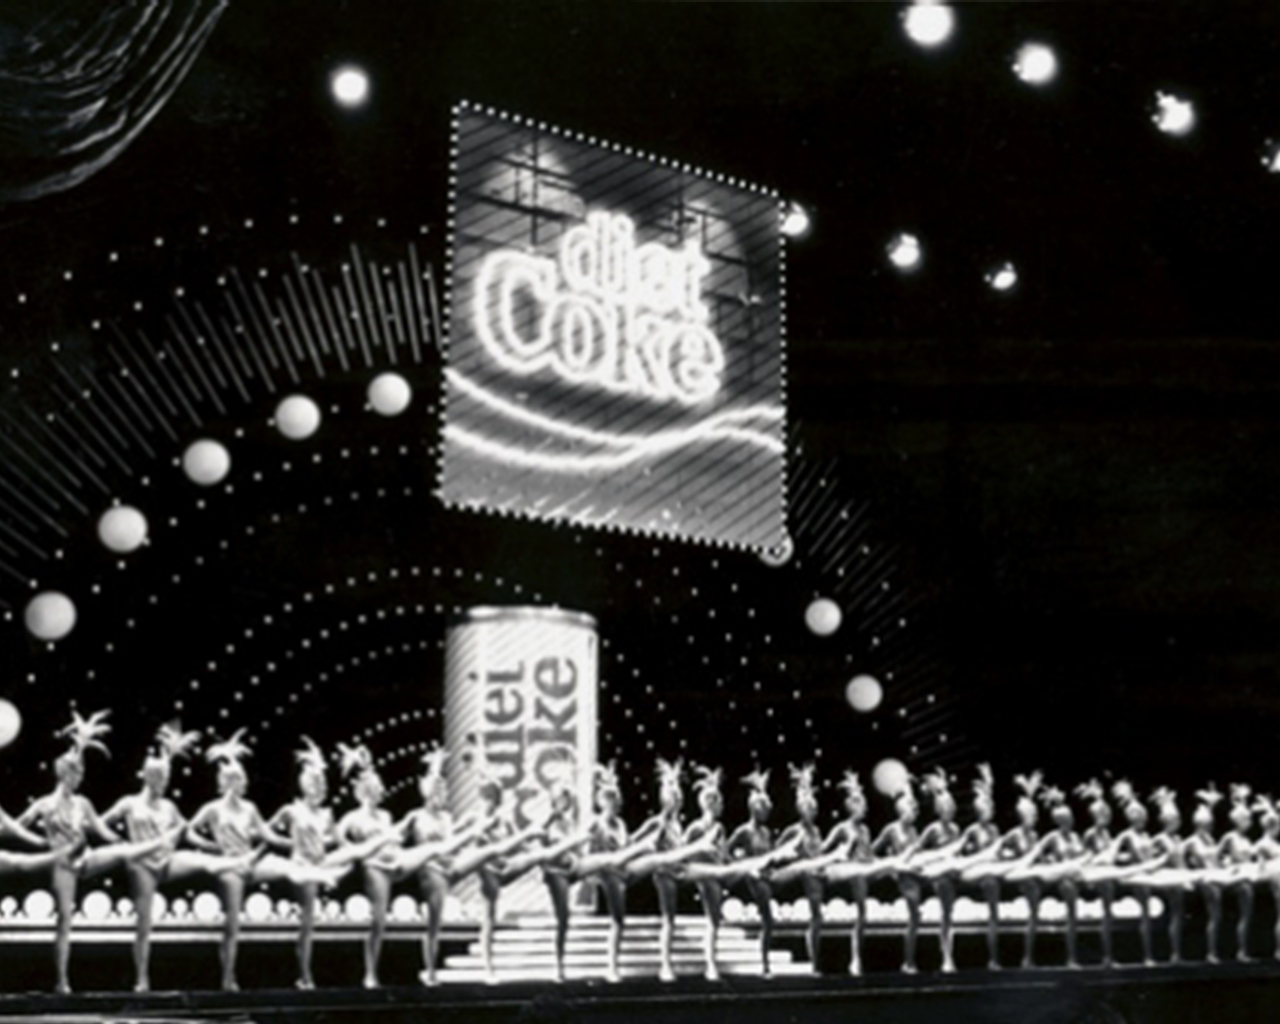 Fotografía antigua en blanco y negro de un espectáculo de baile de los años 1920 con una ilustración de Coca-Cola Diet 